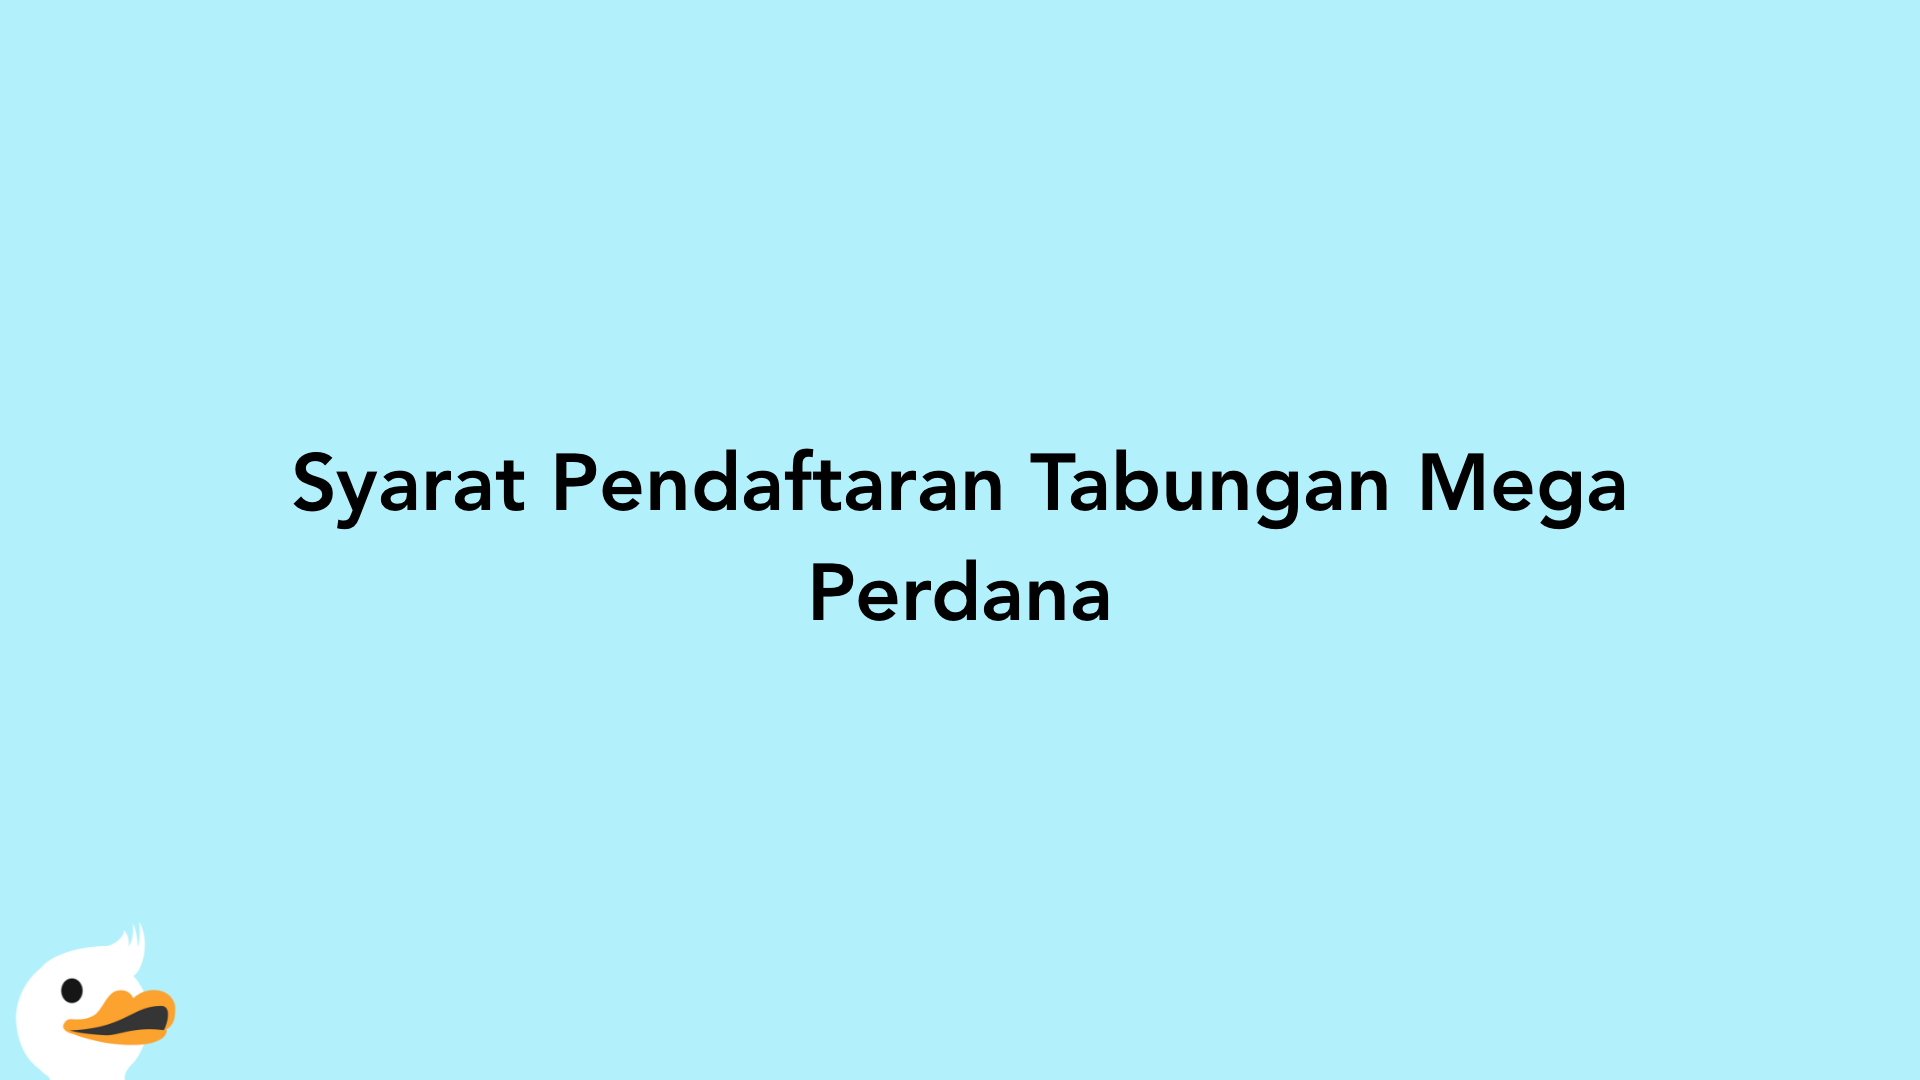 Syarat Pendaftaran Tabungan Mega Perdana